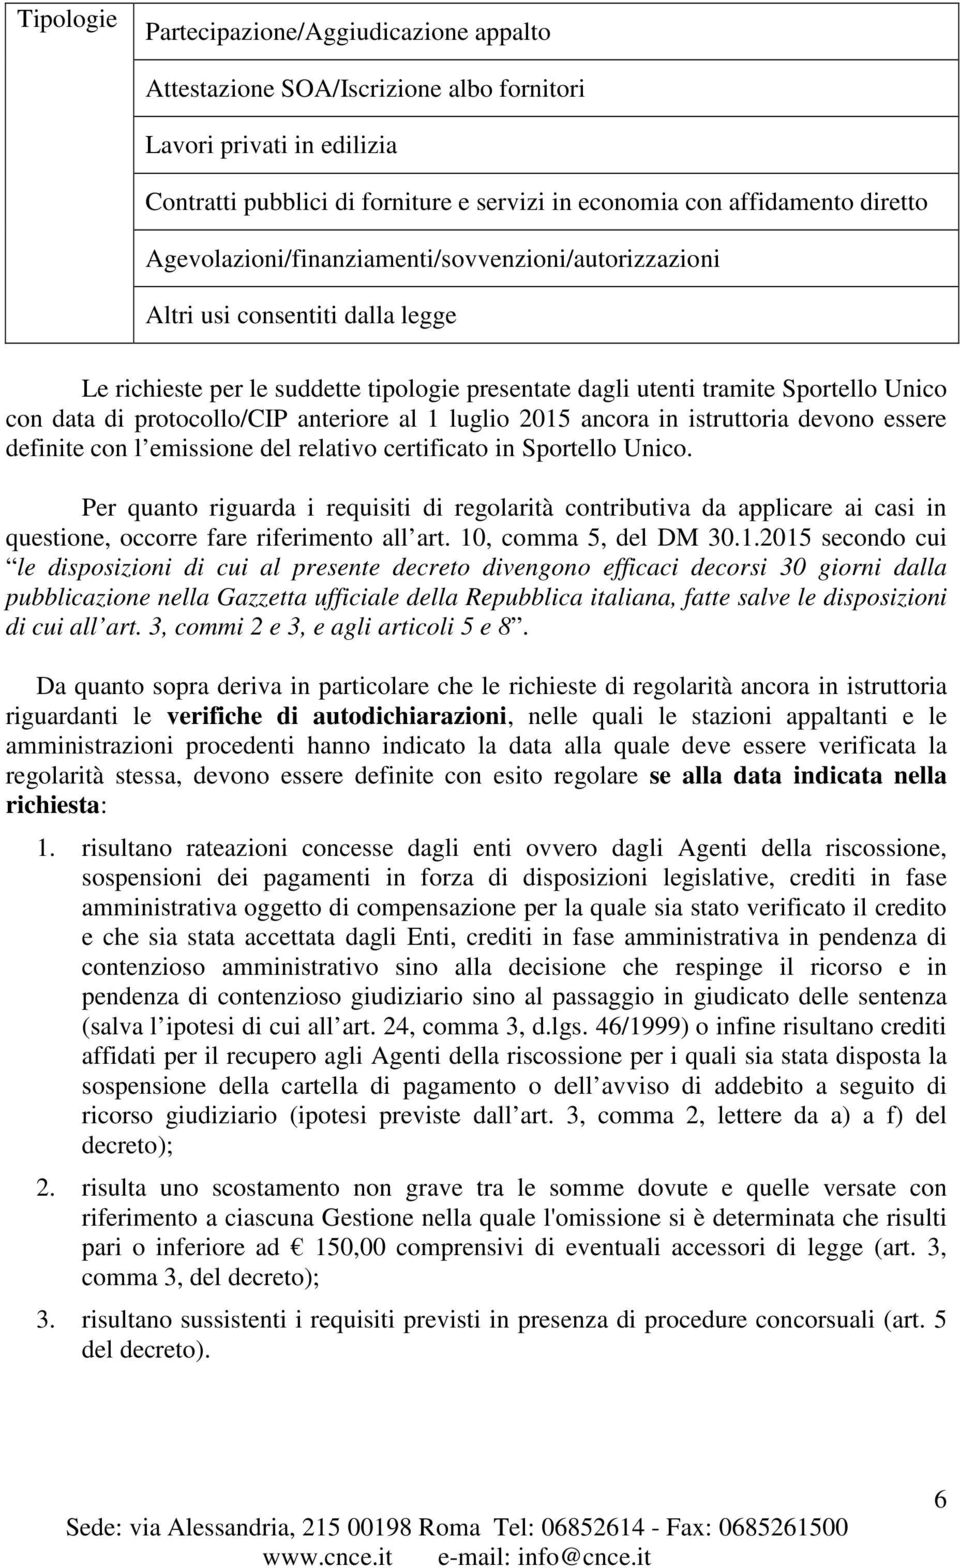 protocollo/cip anteriore al 1 luglio 2015 ancora in istruttoria devono essere definite con l emissione del relativo certificato in Sportello Unico.